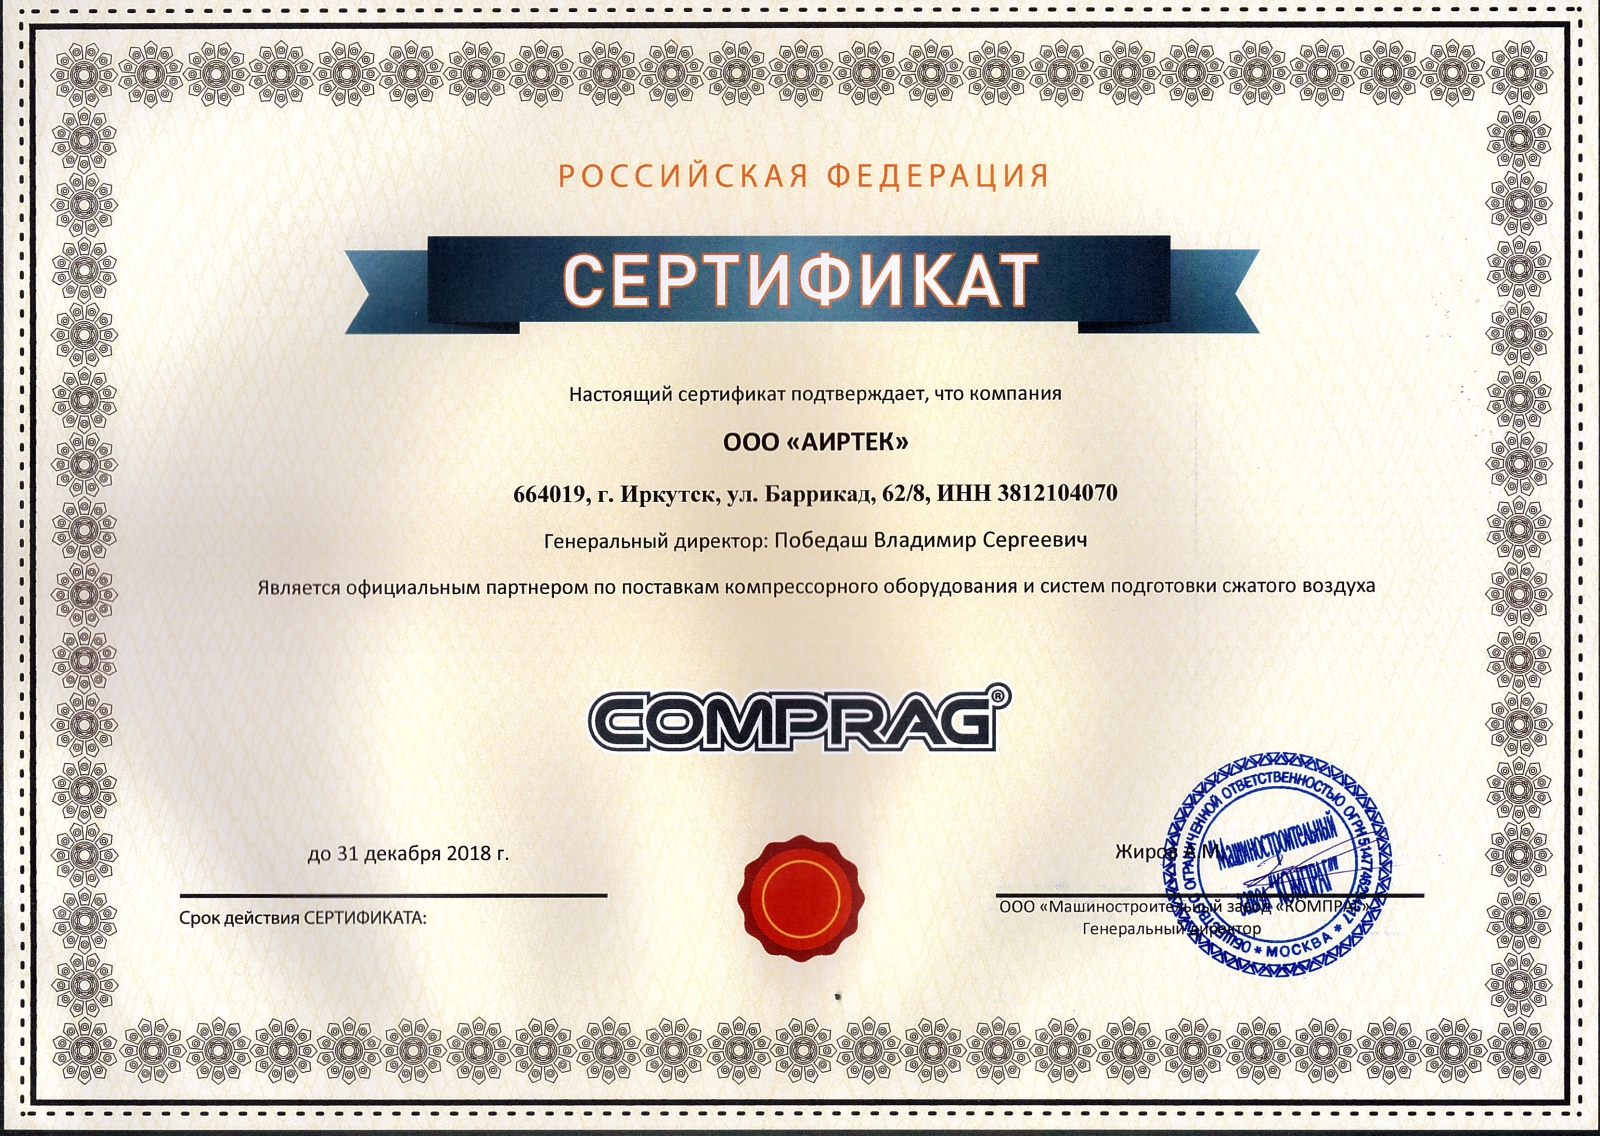 ООО АИРТЕК официальный дилер CONTRACOR  Сертификат официального дилера COMPRAG (компрессорное оборудование и подготовка сжатого воздуха)